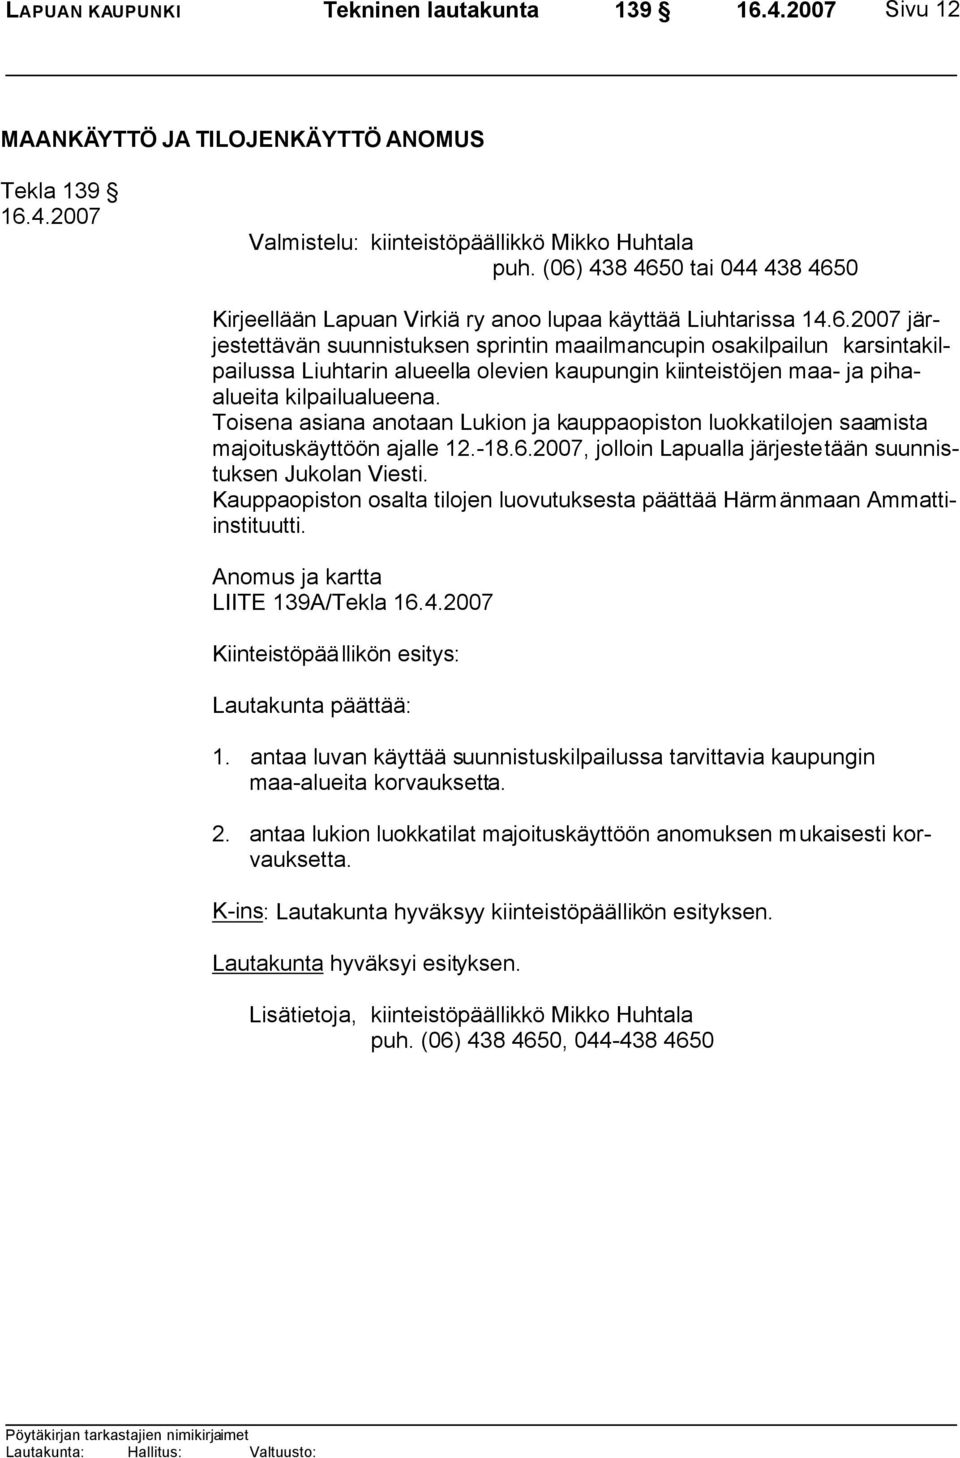 Toisena asiana anotaan Lukion ja kauppaopiston luokkatilojen saamista majoituskäyttöön ajalle 12.-18.6.2007, jolloin Lapualla järjestetään suunnistuksen Jukolan Viesti.